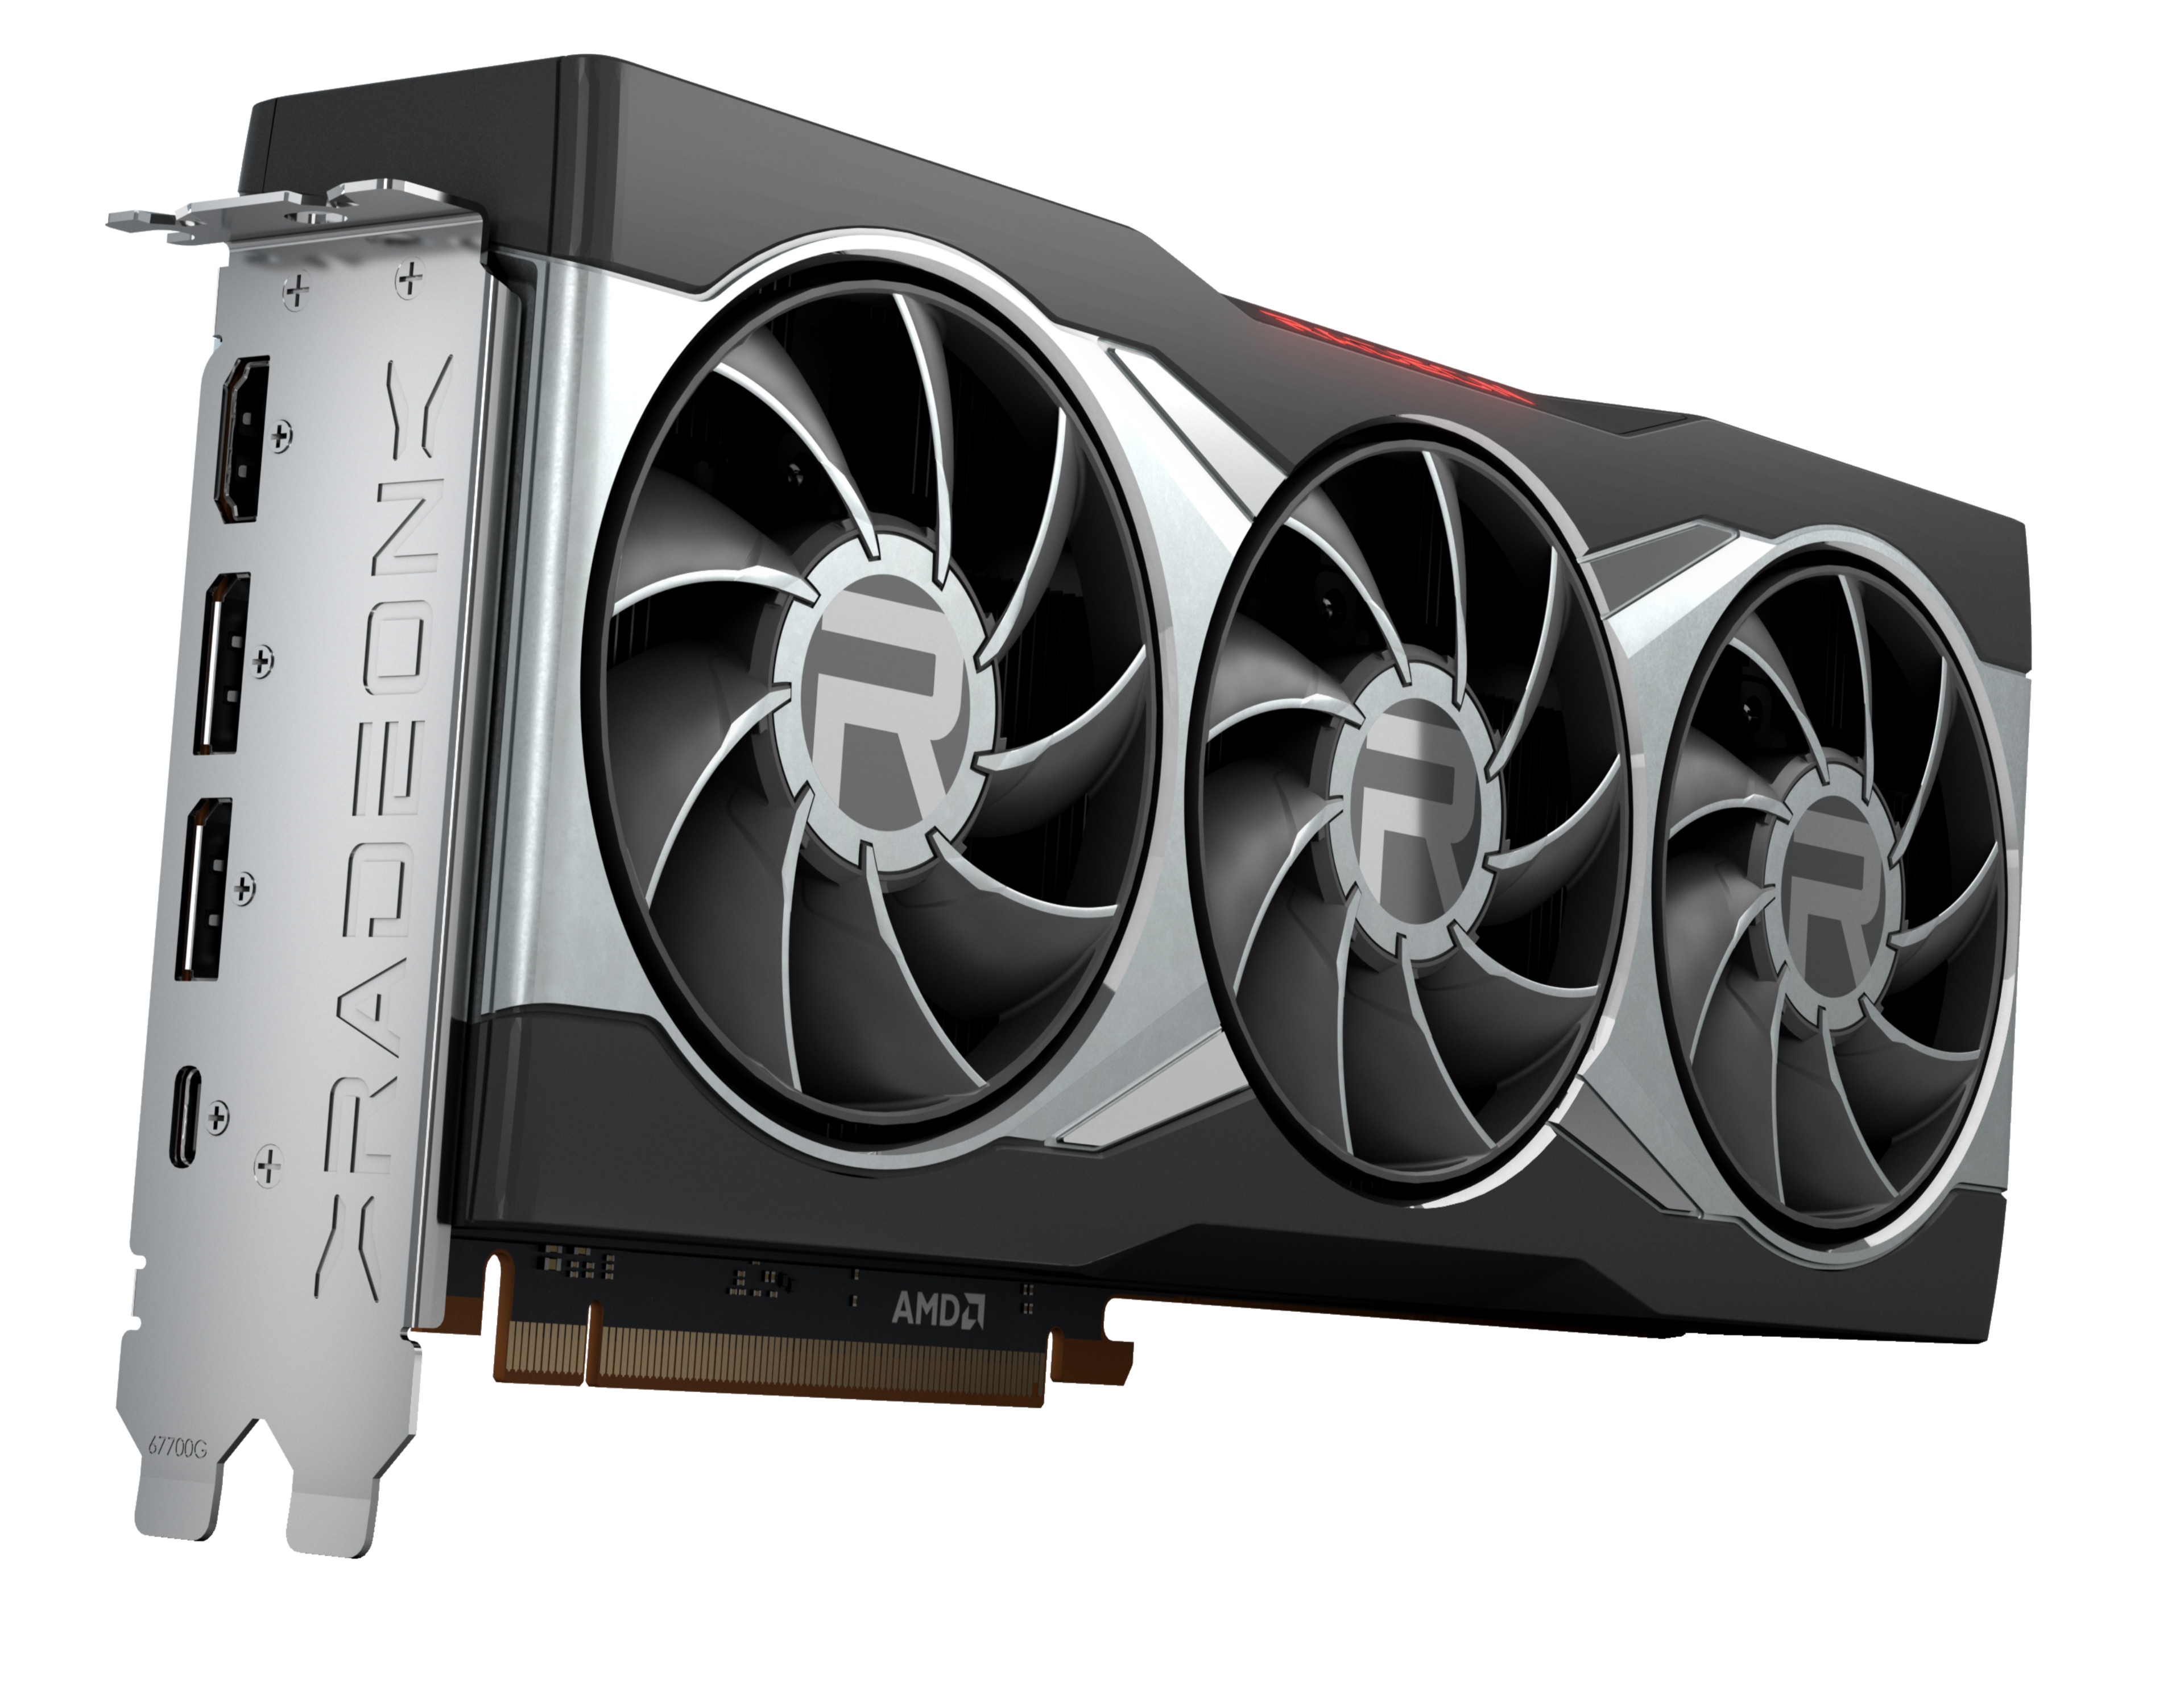 voordelig oogst Relatie AMD Radeon RX 6900 XT GPU - Benchmarks and Specs - NotebookCheck.net Tech